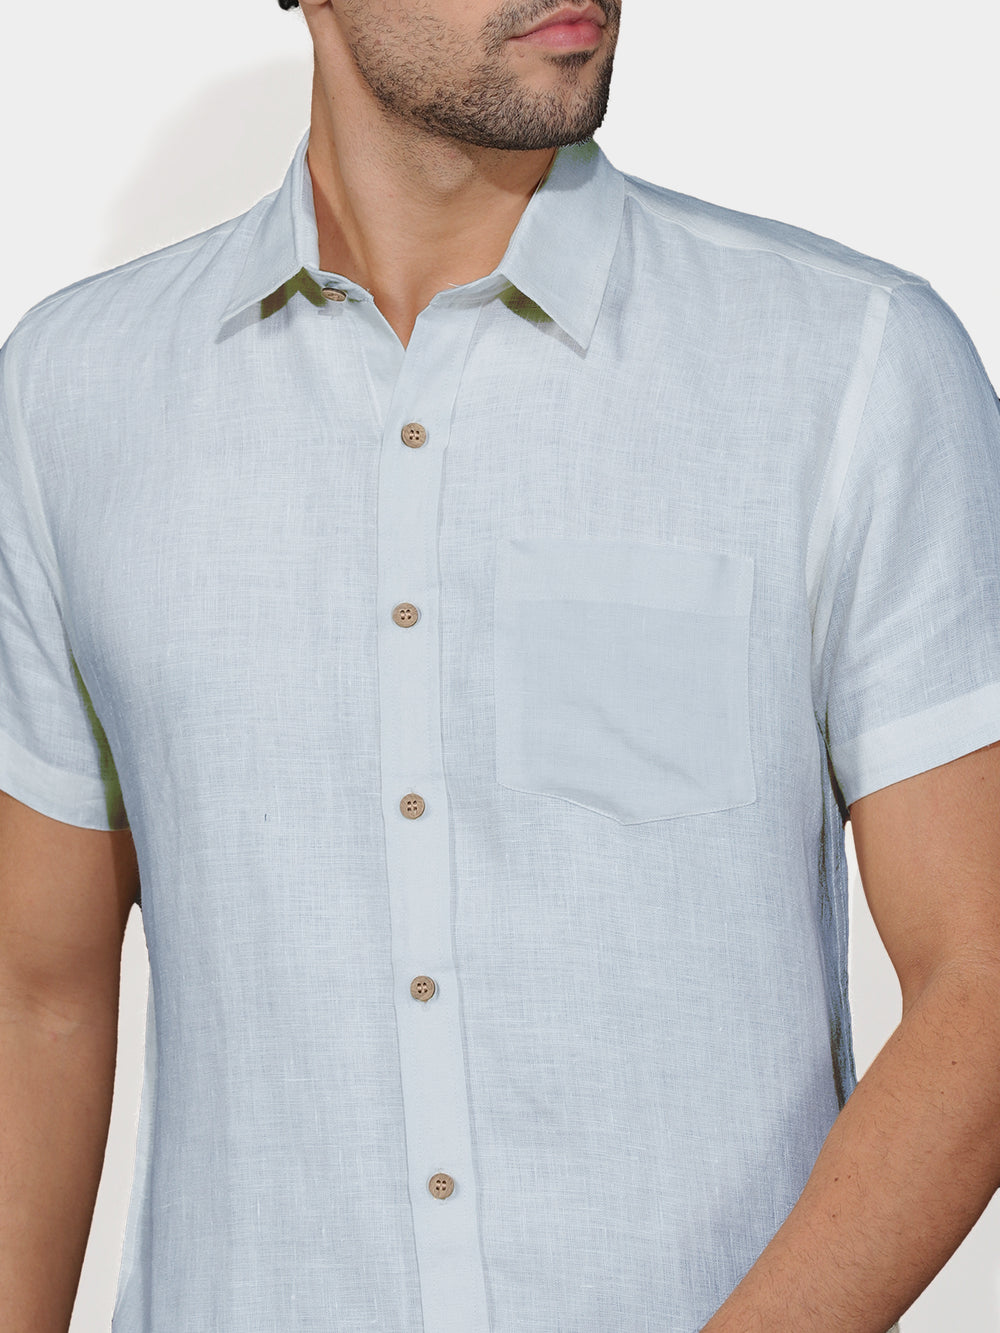 Harvey - Pure Linen Half Sleeve Shirt - Shutter Blue